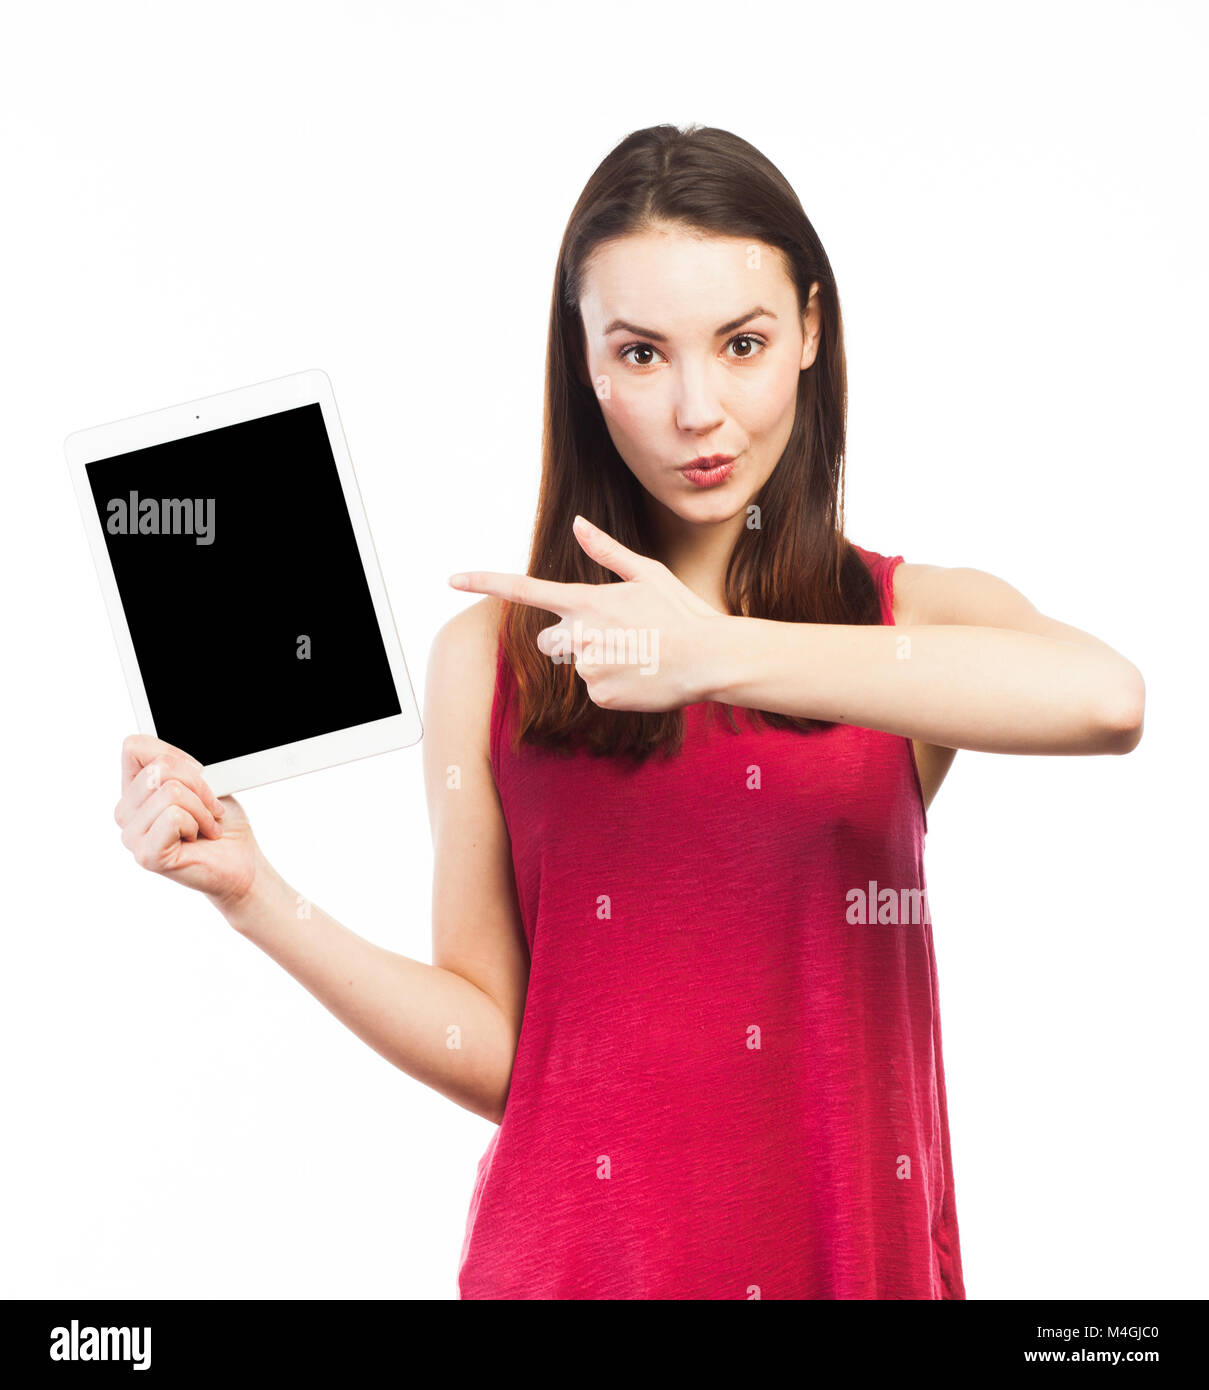 Giovane donna che mostra la schermata vuota di una tavoletta elettronica, isolato su bianco Foto Stock